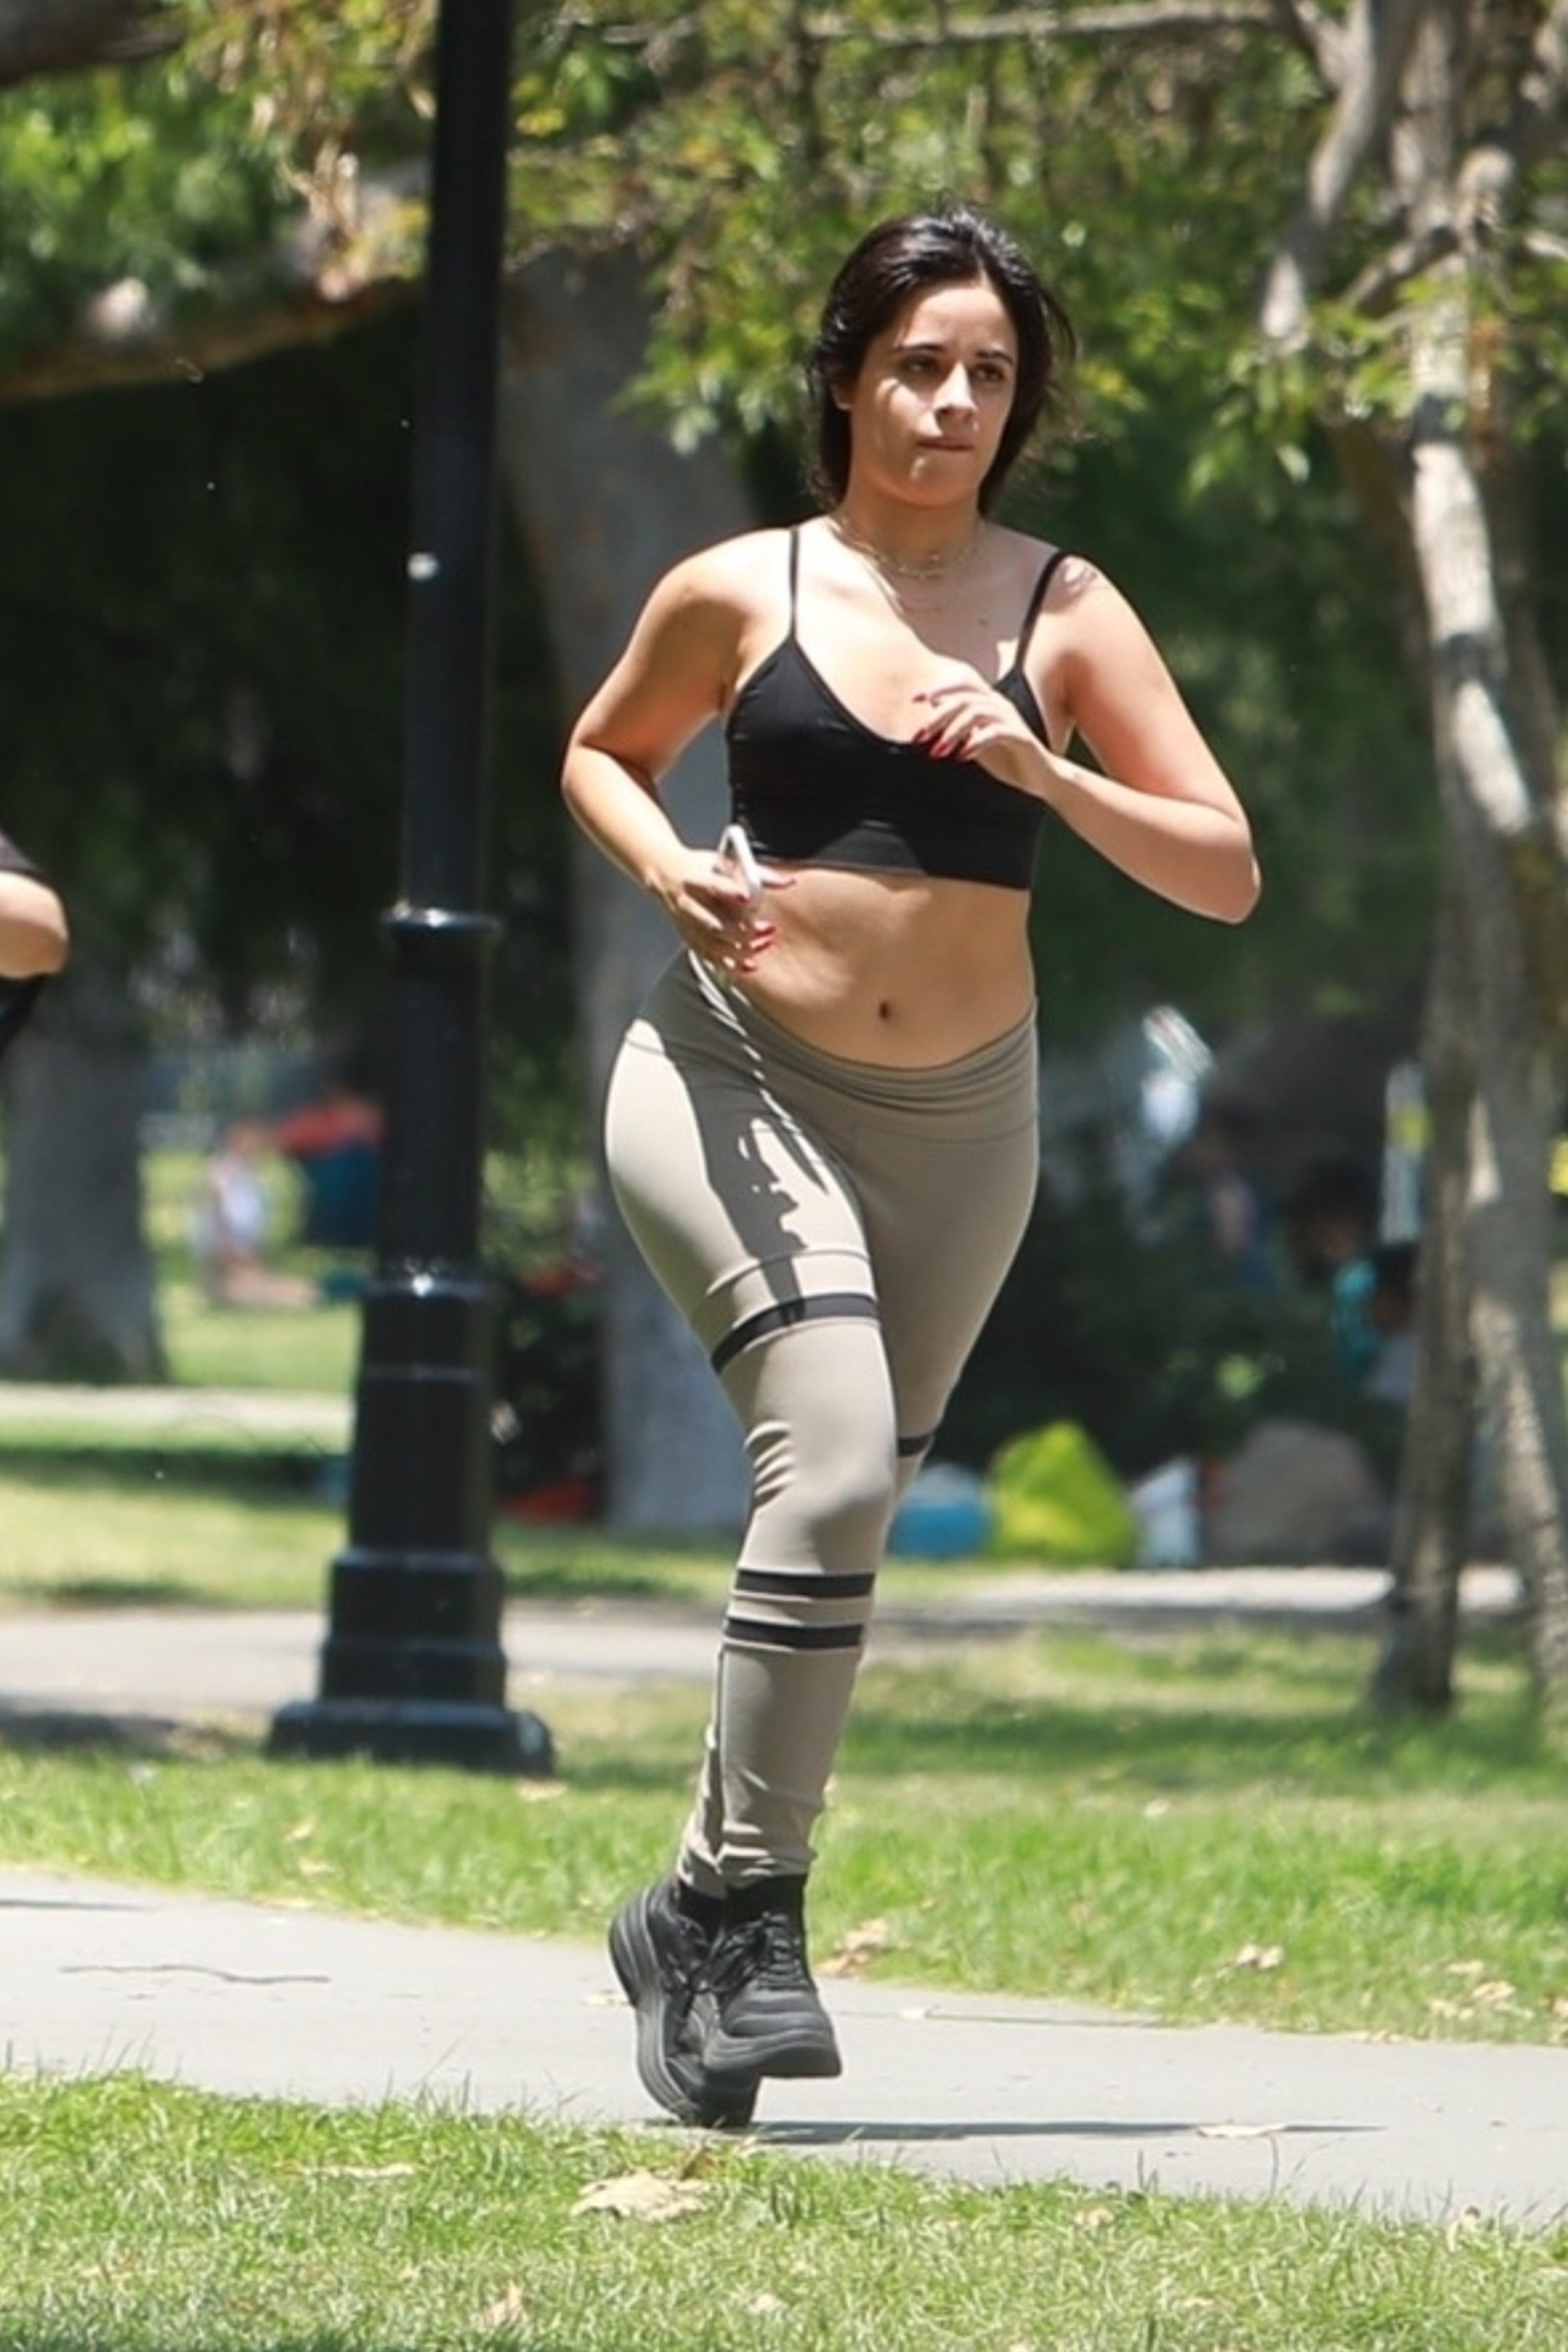 Día de entrenamiento. Camila Cabello compartió una rutina de gimnasia junto a su madre. La cantante salió a correr por un parque de Beverly Hills. Lució un conjunto deportivo de calzas grises y top negro